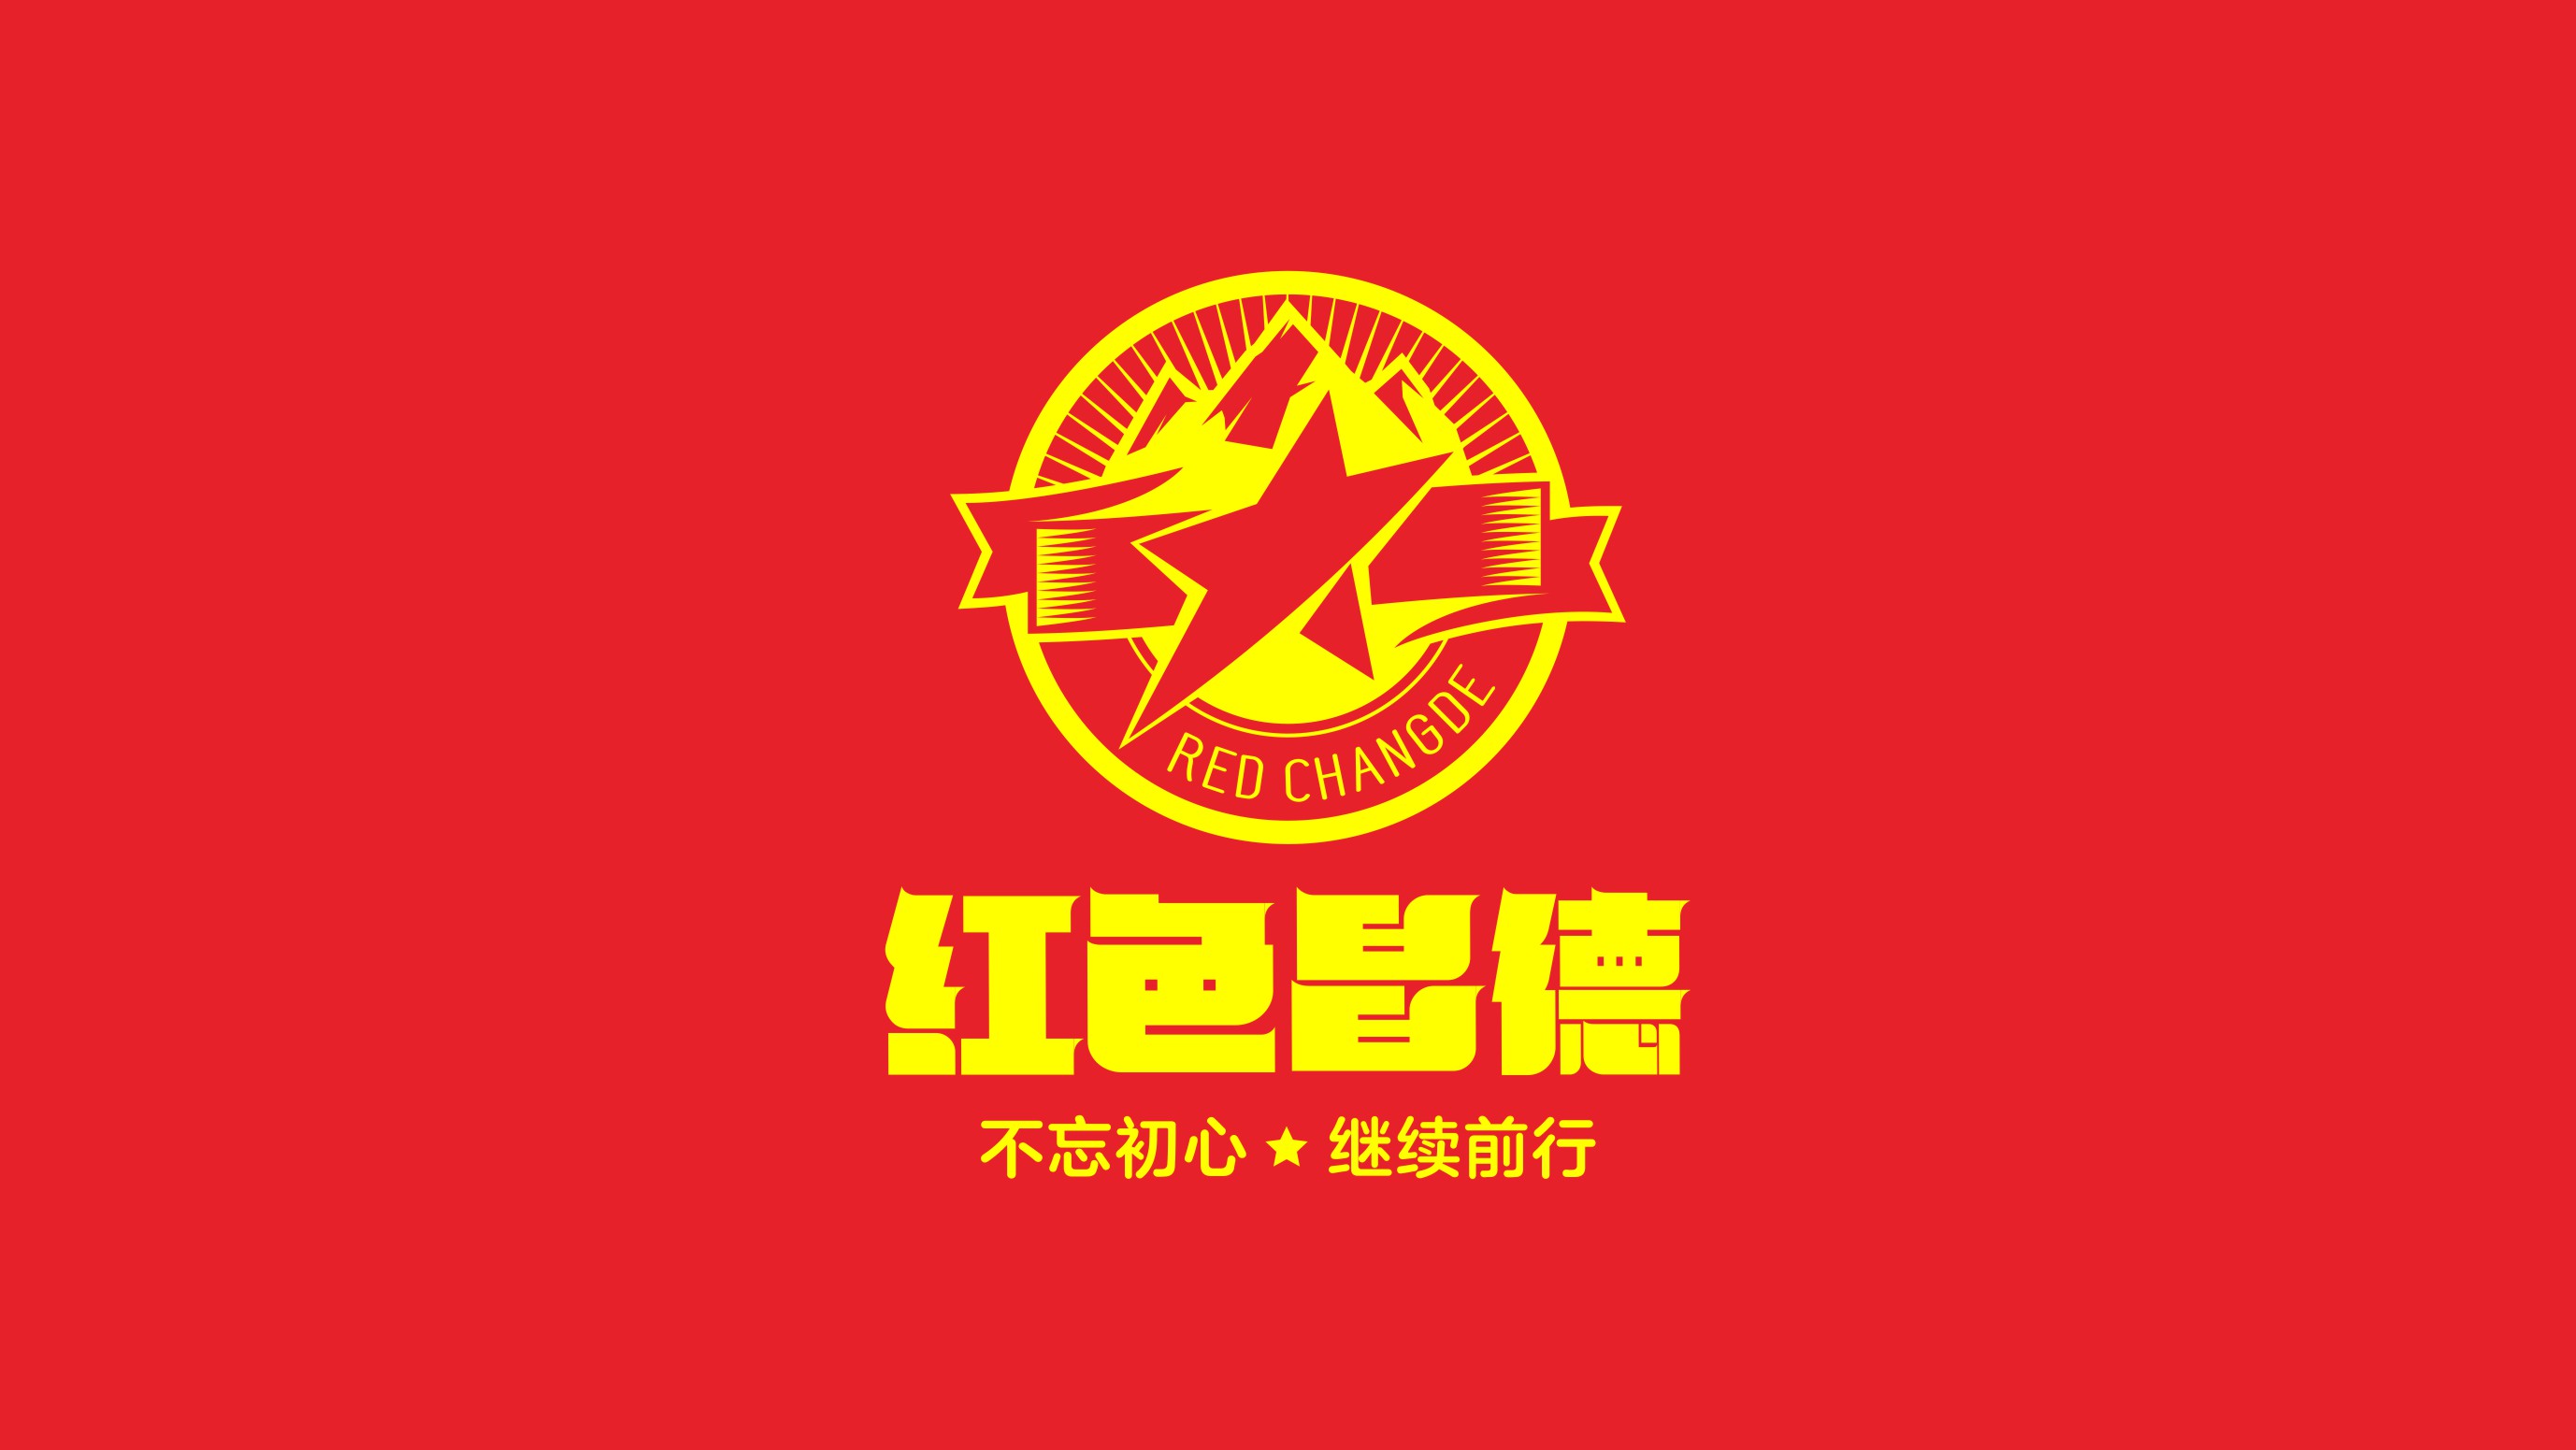 红色logo设计说明图片